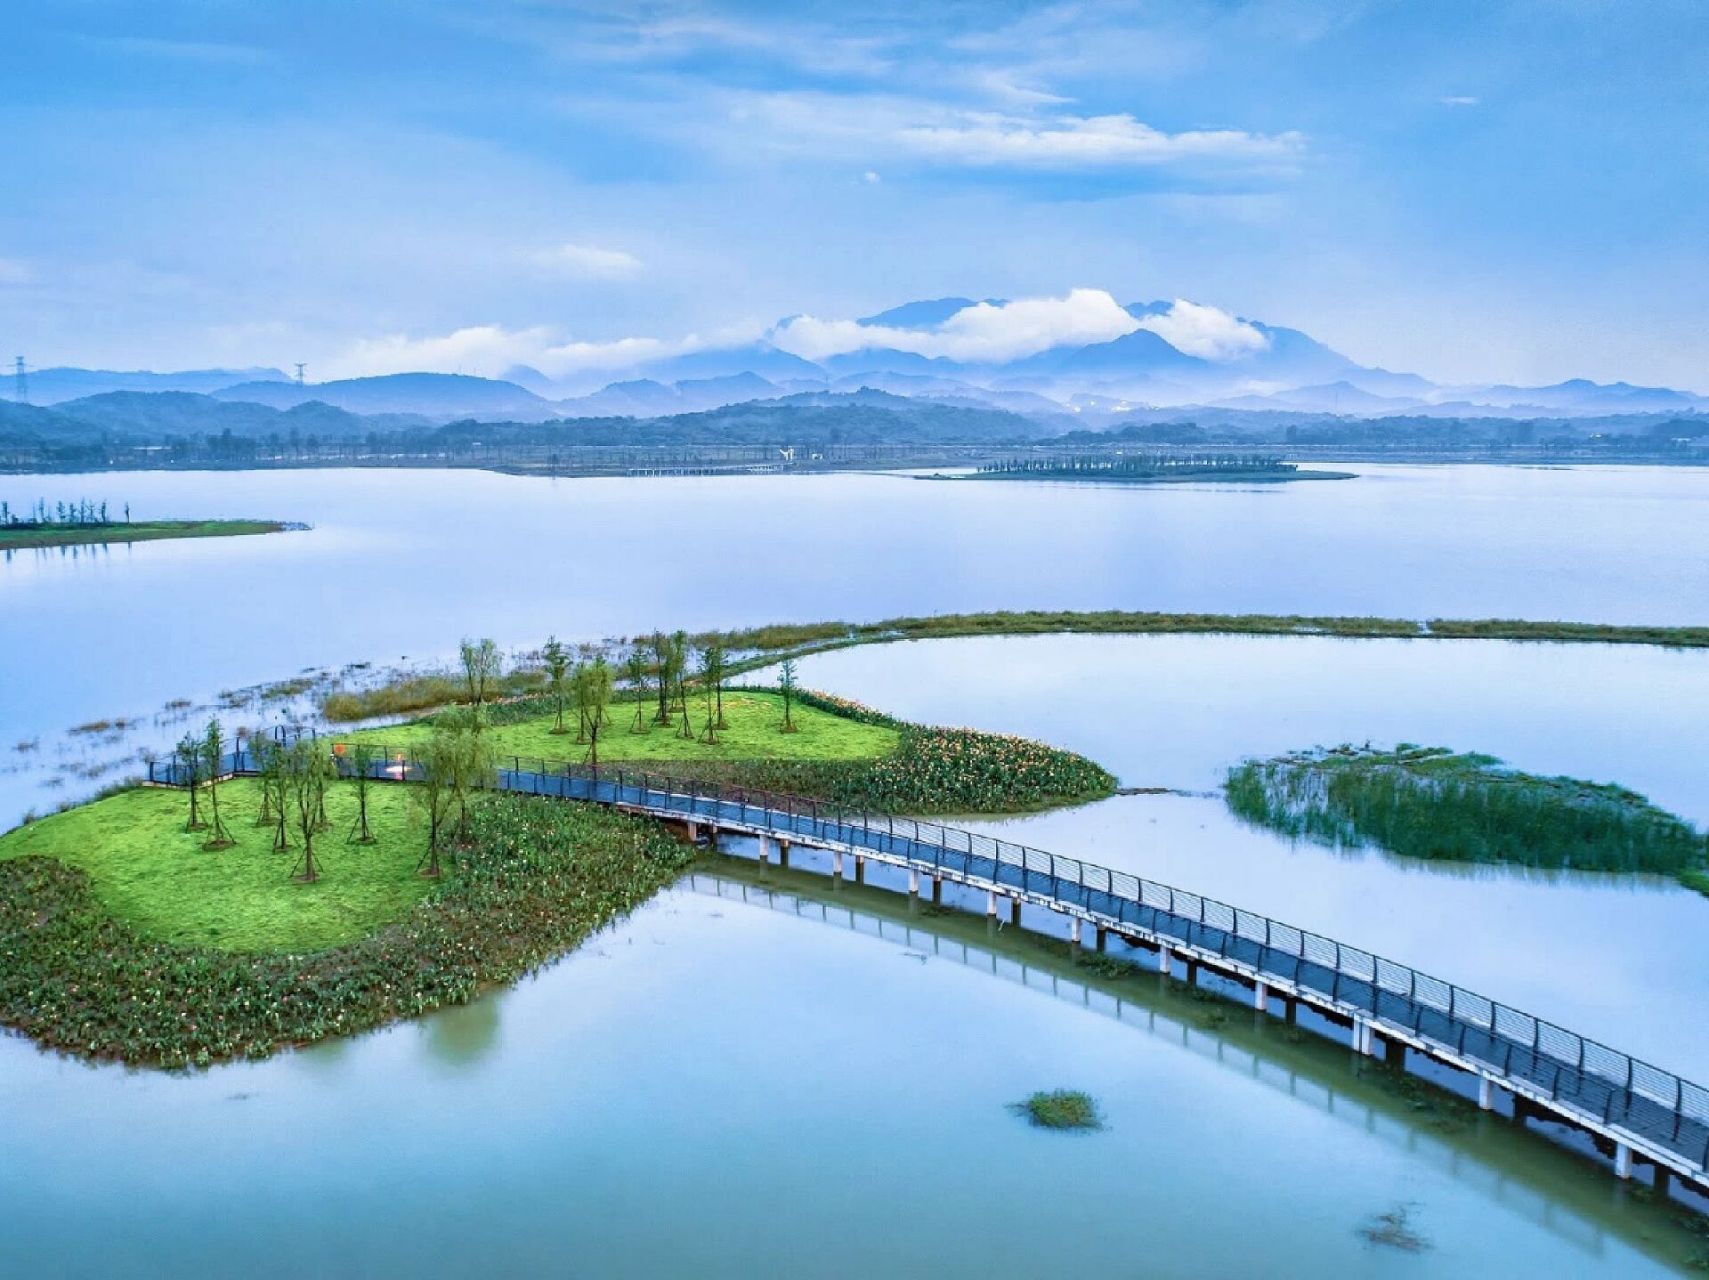 鄱阳湖位于南昌,九江交界处的长江南岸,是中国第一大淡水湖,也是止